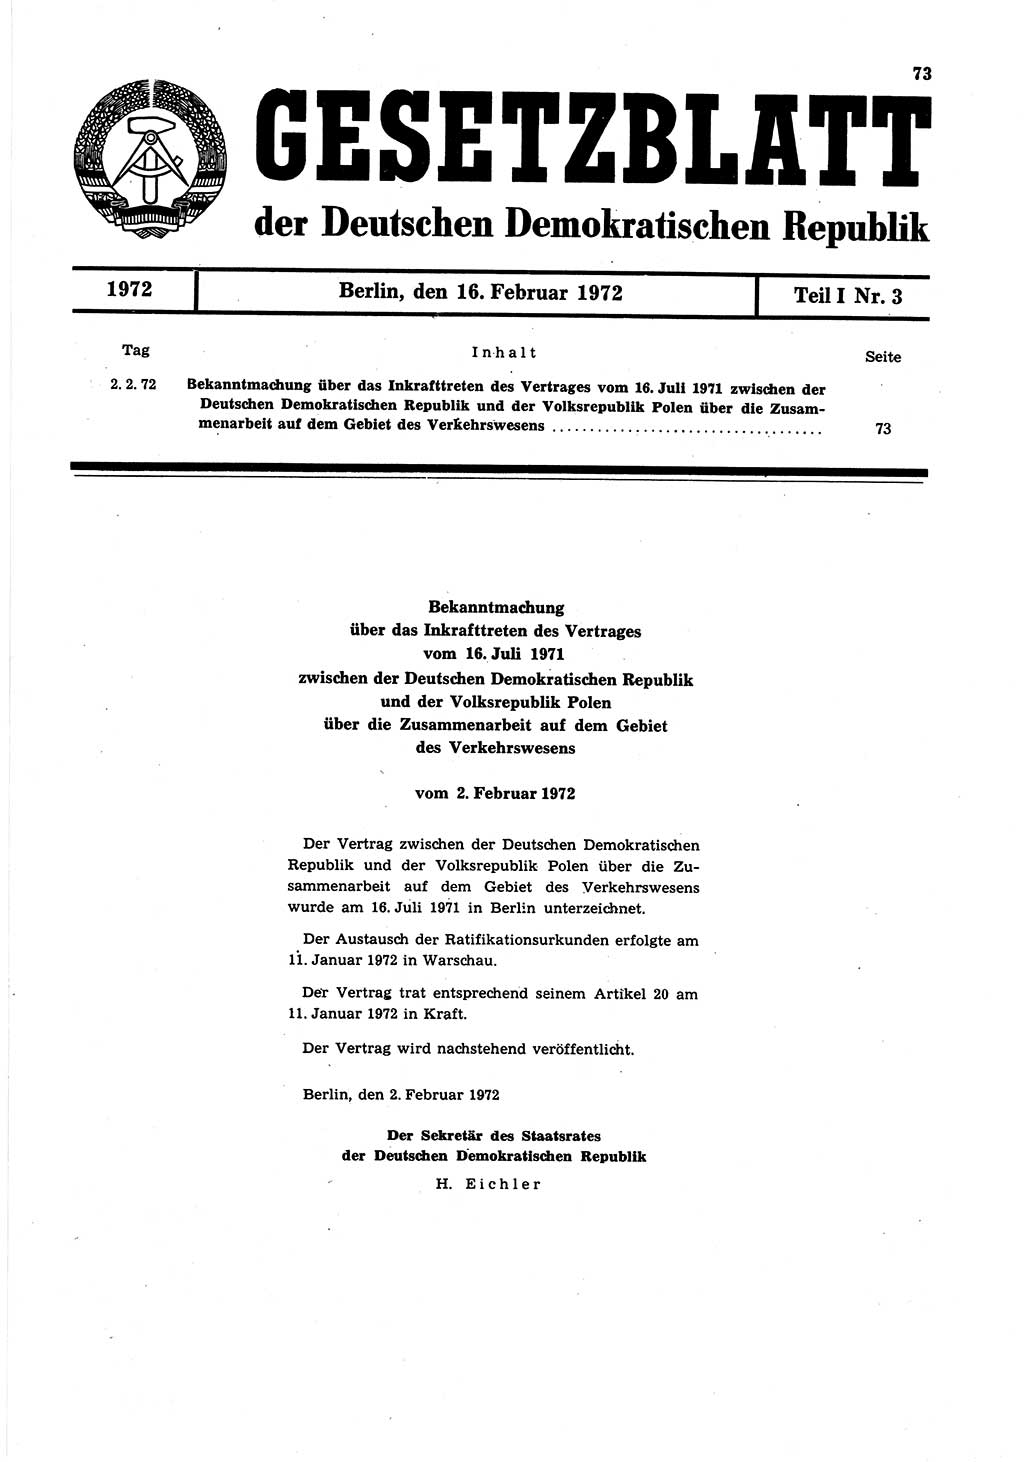 Gesetzblatt (GBl.) der Deutschen Demokratischen Republik (DDR) Teil Ⅰ 1972, Seite 73 (GBl. DDR Ⅰ 1972, S. 73)